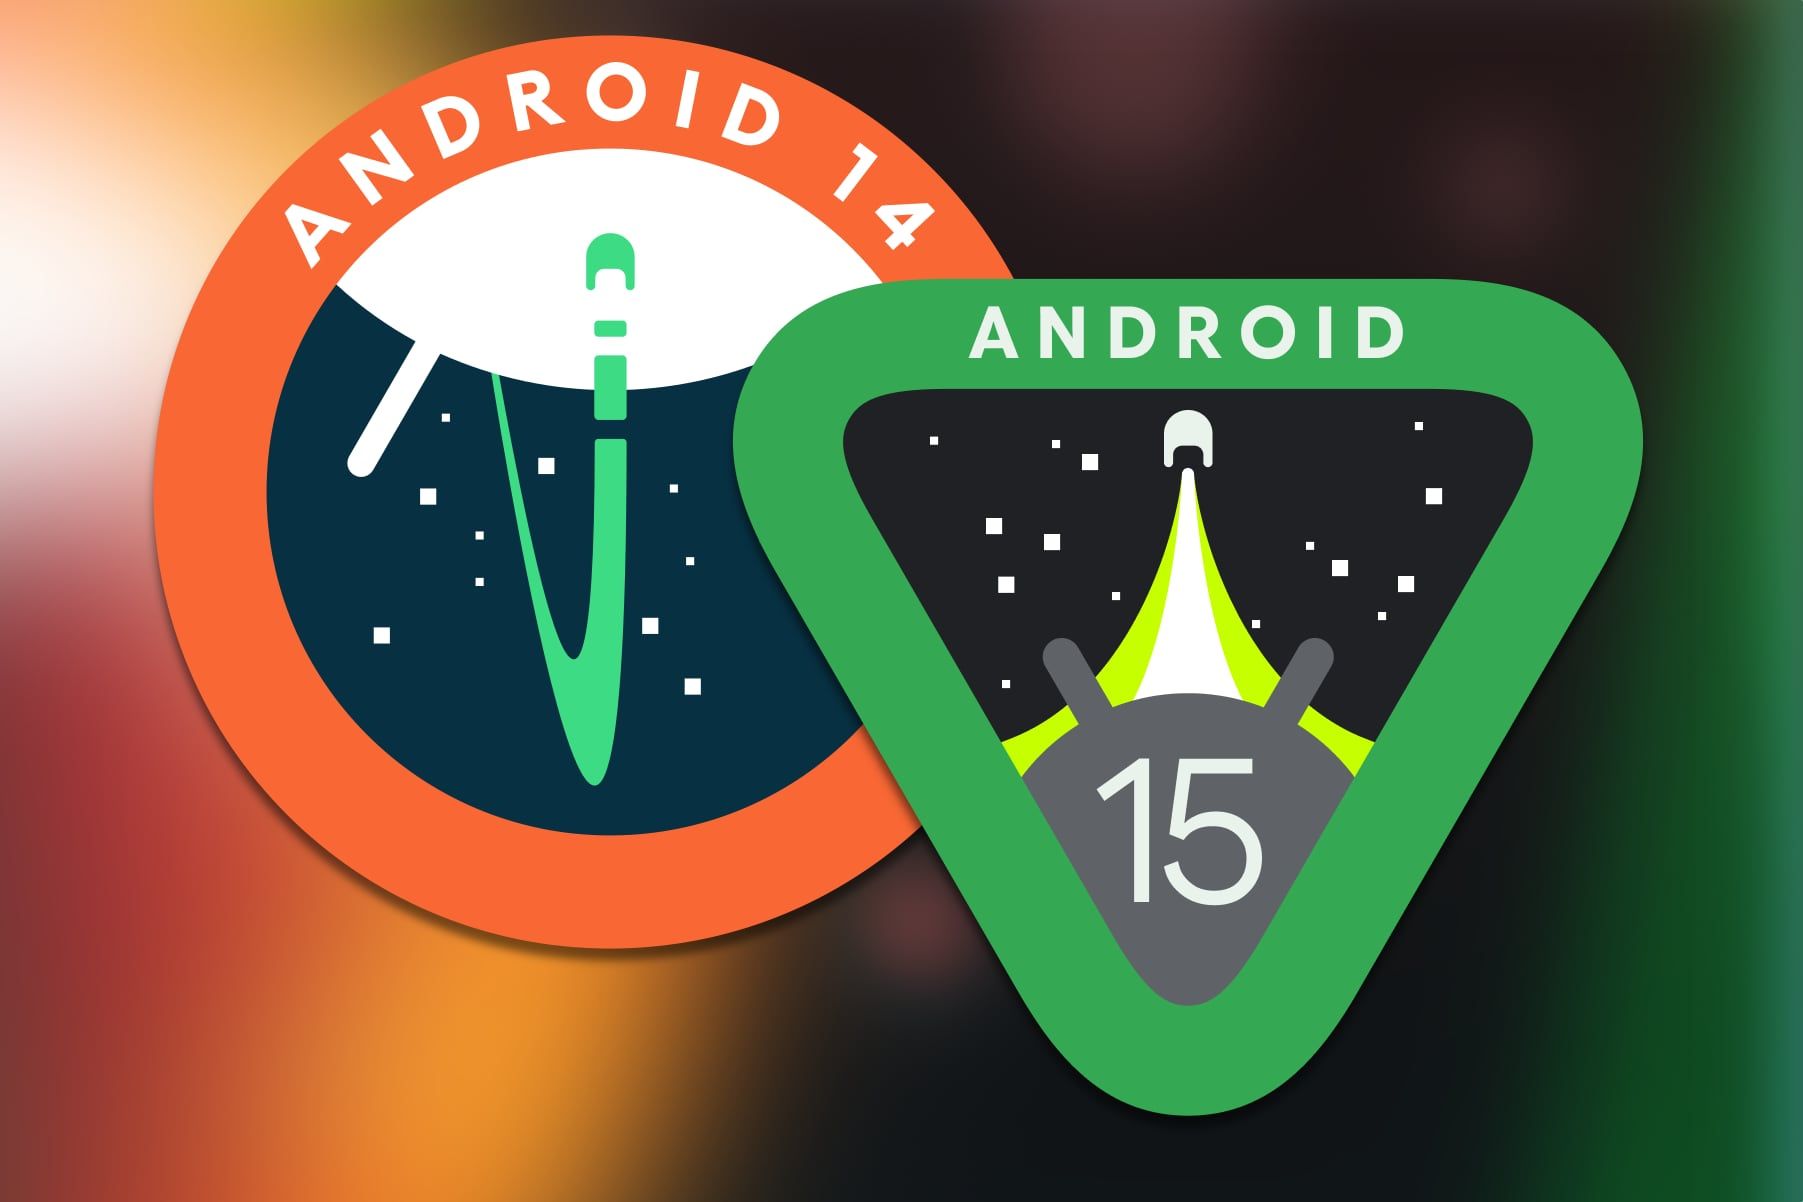 O logotipo do Android 14 sobreposto ao logotipo do Android 15 em um fundo colorido